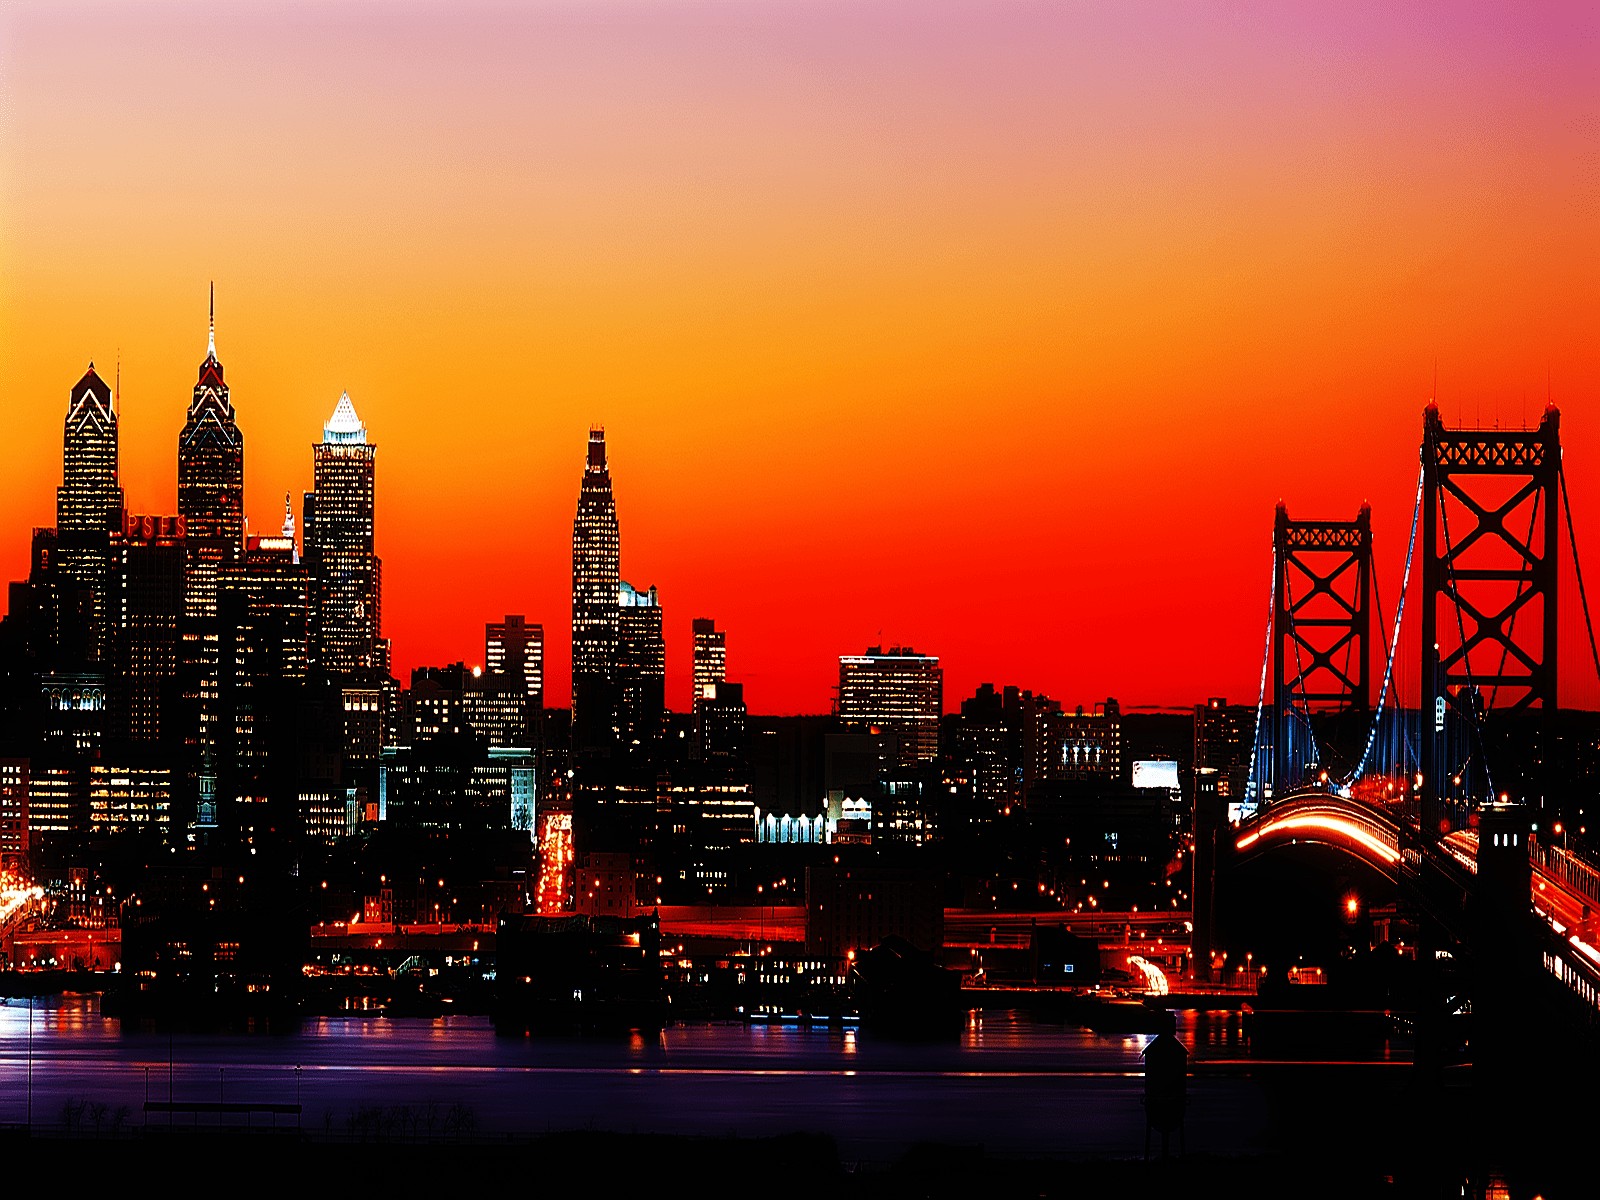 Hình nền chân trời thành phố Philadelphia sẽ khiến bạn đầy sự ngưỡng mộ và phấn khởi. Bạn sẽ nhìn thấy đường phố sầm uất, những tòa nhà cao tầng và những đèn neon rực rỡ. Hãy xem hình ảnh liên quan và đắm mình trong không gian thành phố đầy sức sống này.